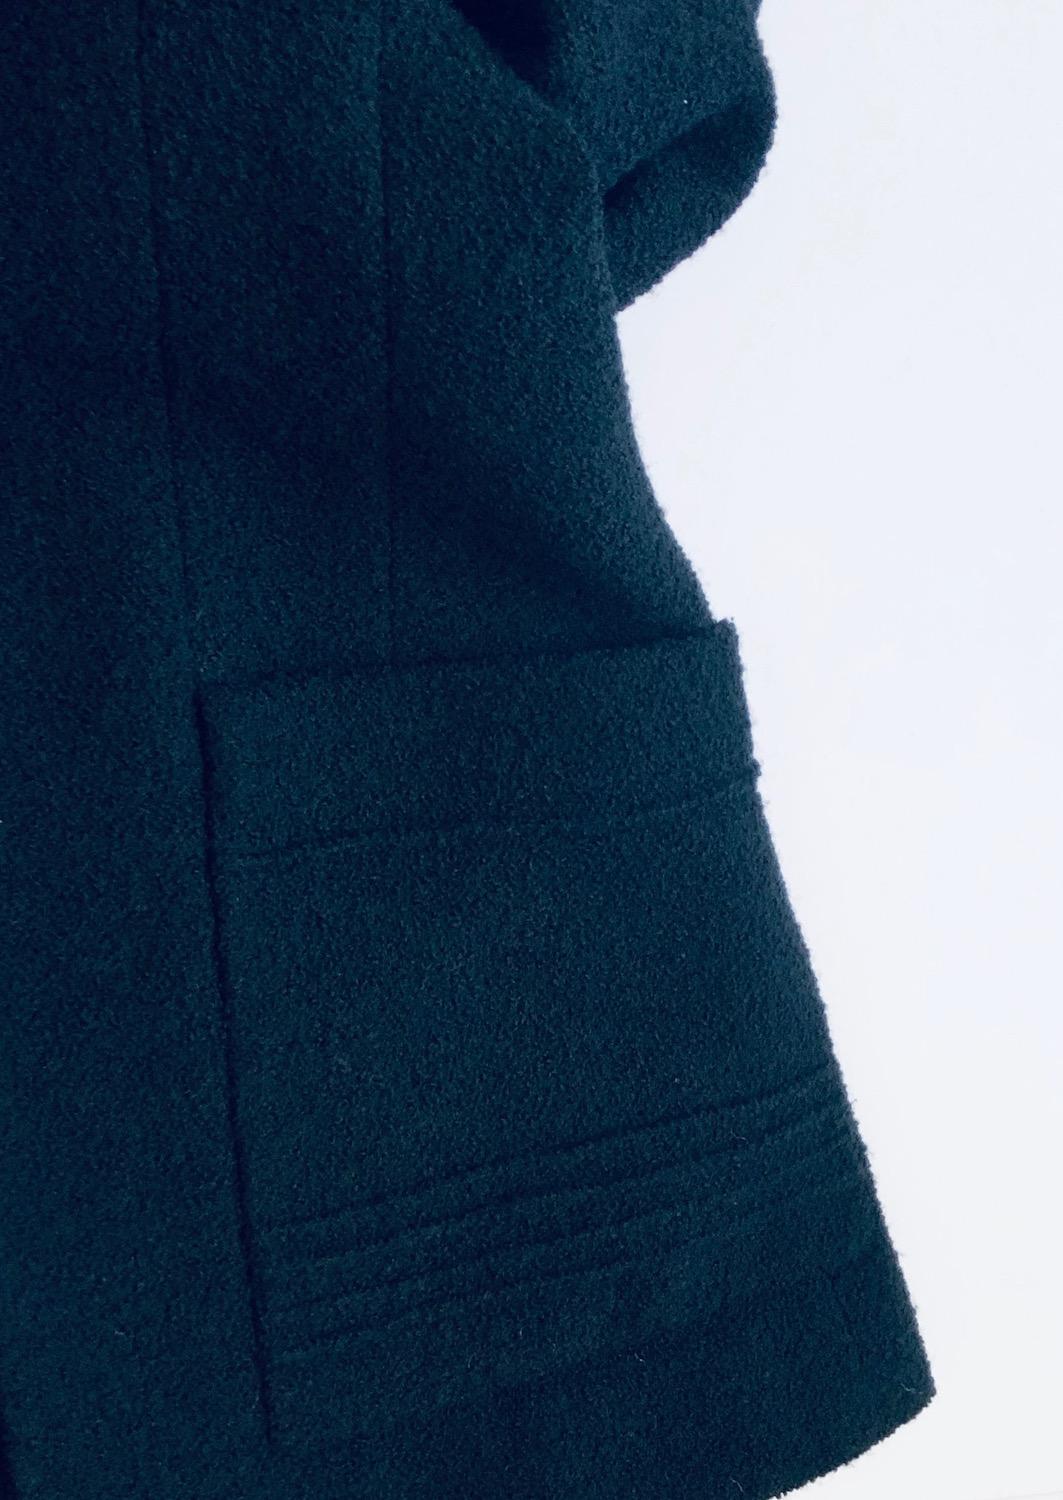 CHANEL Vintage Black Bouclé Wool CC Logo Buttons Jacket Suit 1993 7